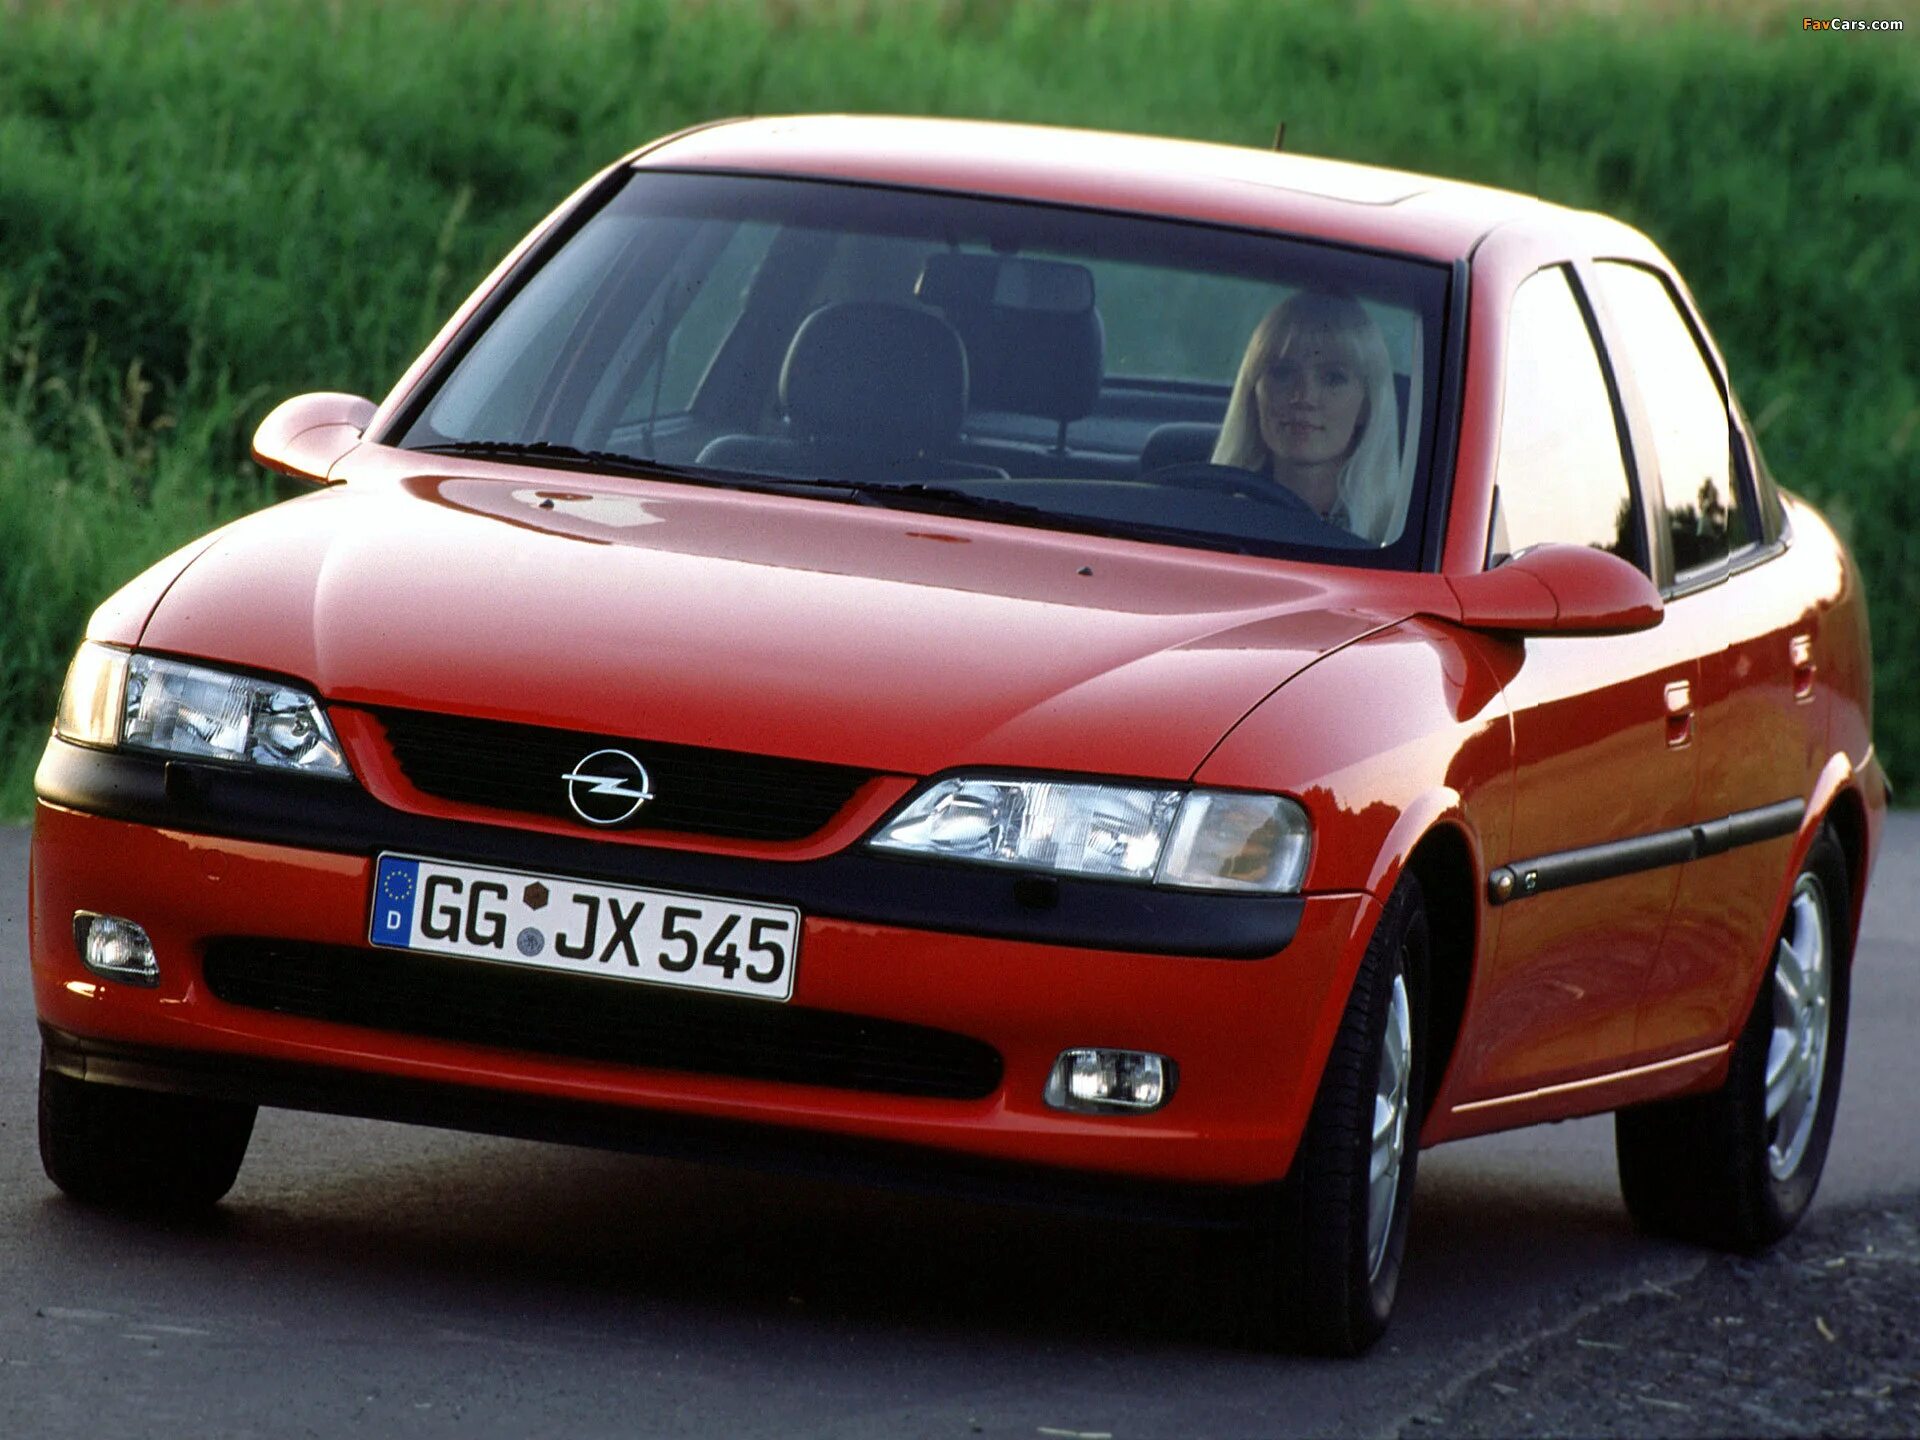 Opel Vectra 1995. Opel Vectra b 1995-2002. Opel Vectra b 1.6. Opel Vectra 1. Опель вектра б отзывы